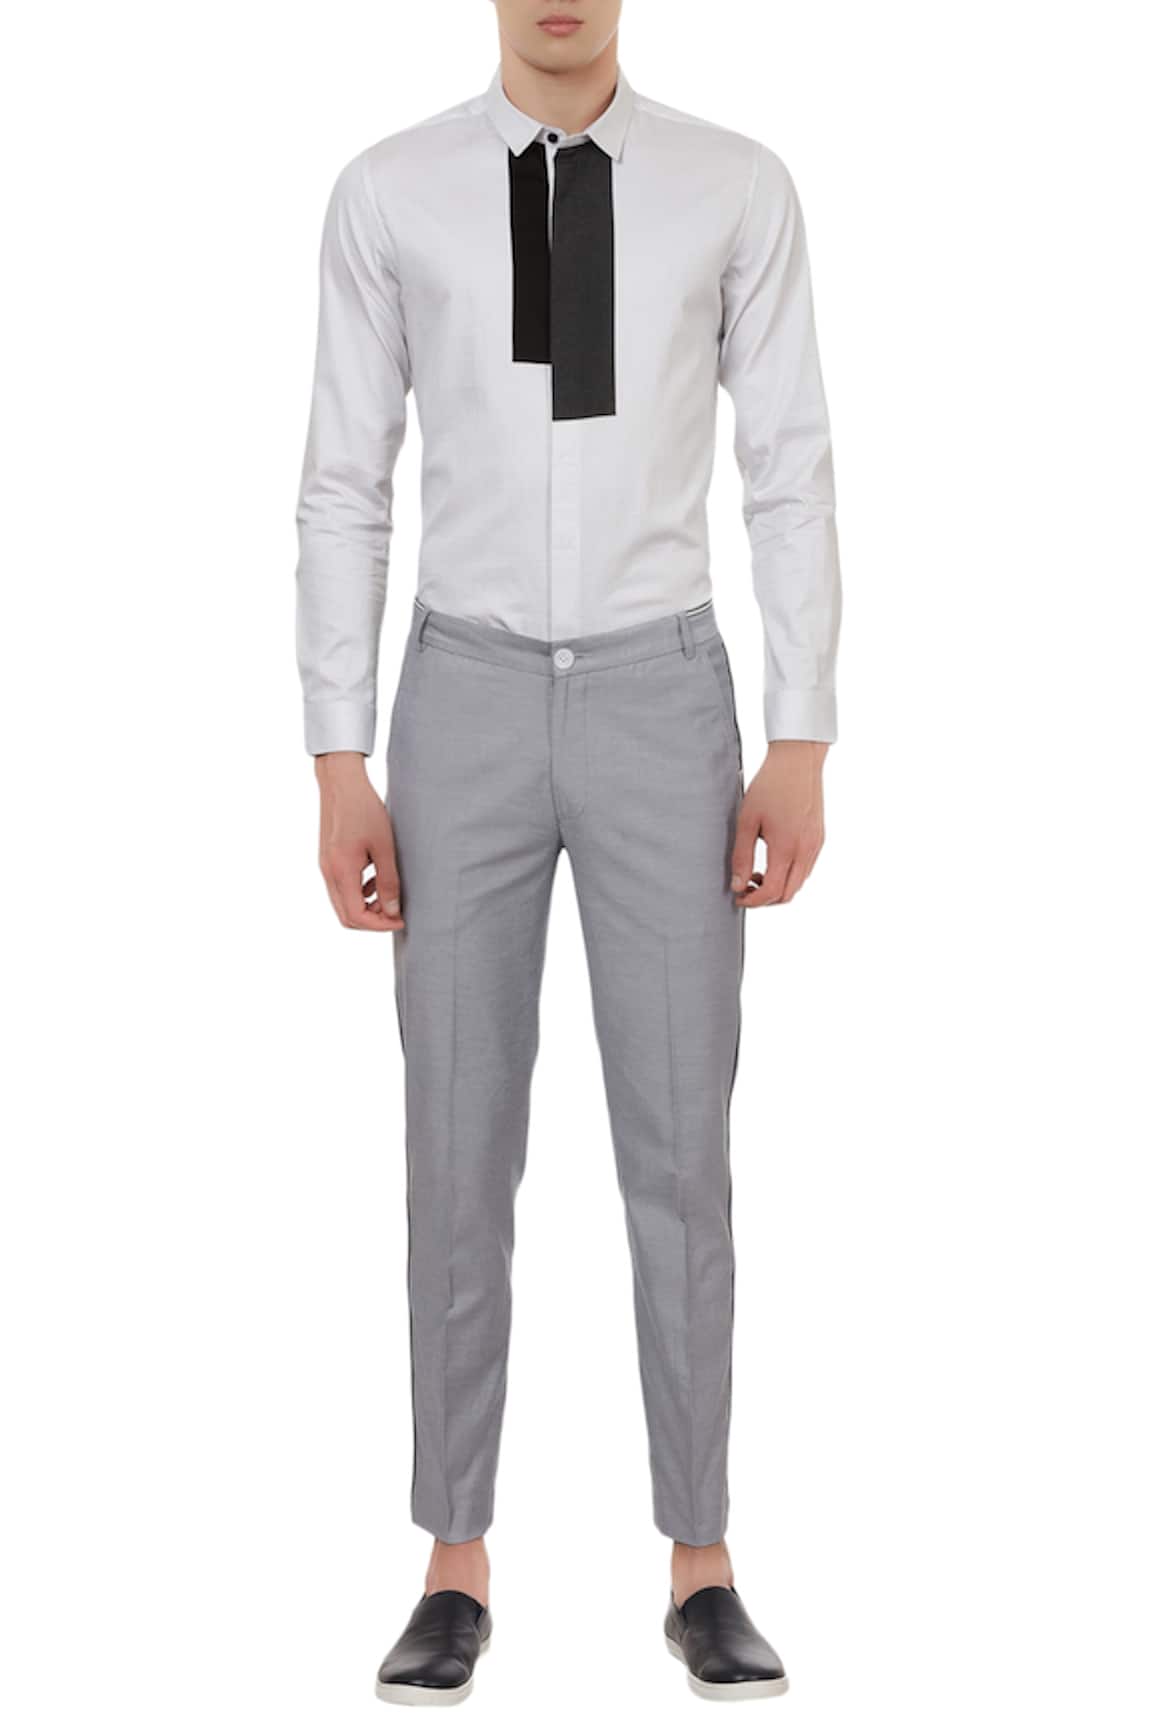 Buy Formal Worsted Grey Trouser For Men Online  Best Prices in India   Uniform Bucket  UNIFORM BUCKET